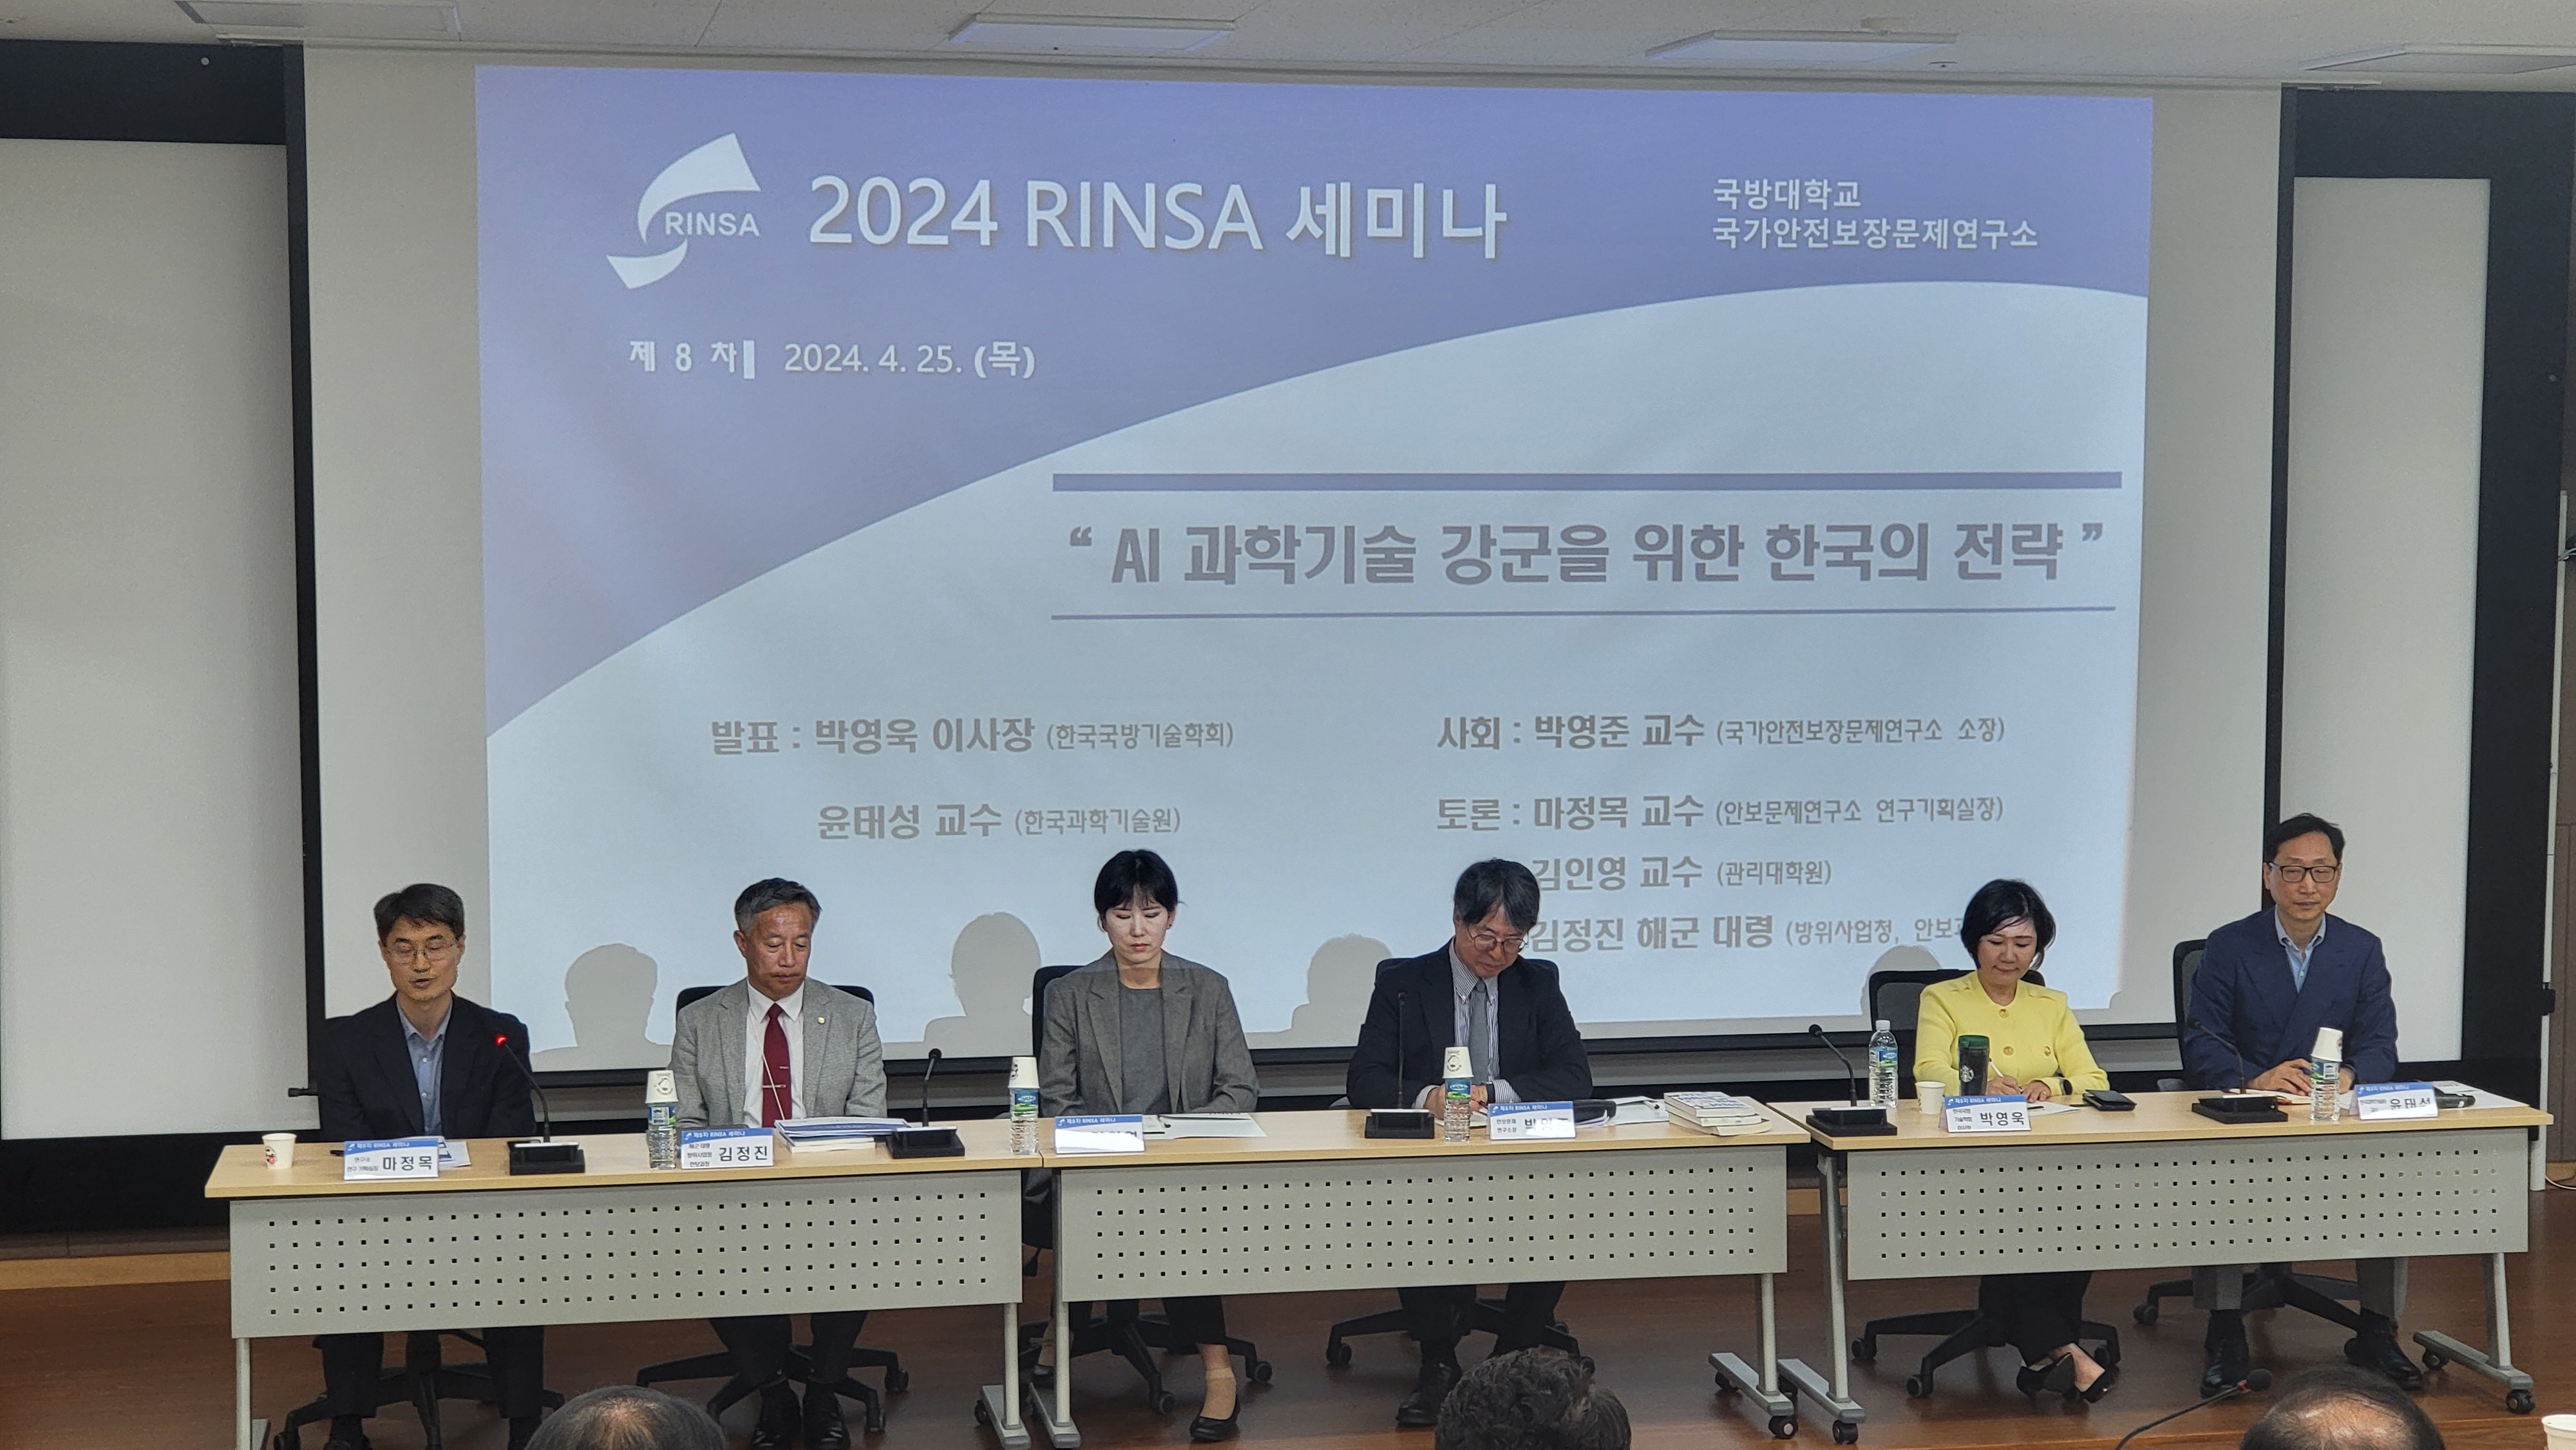 8th RINSA Seminar 2024